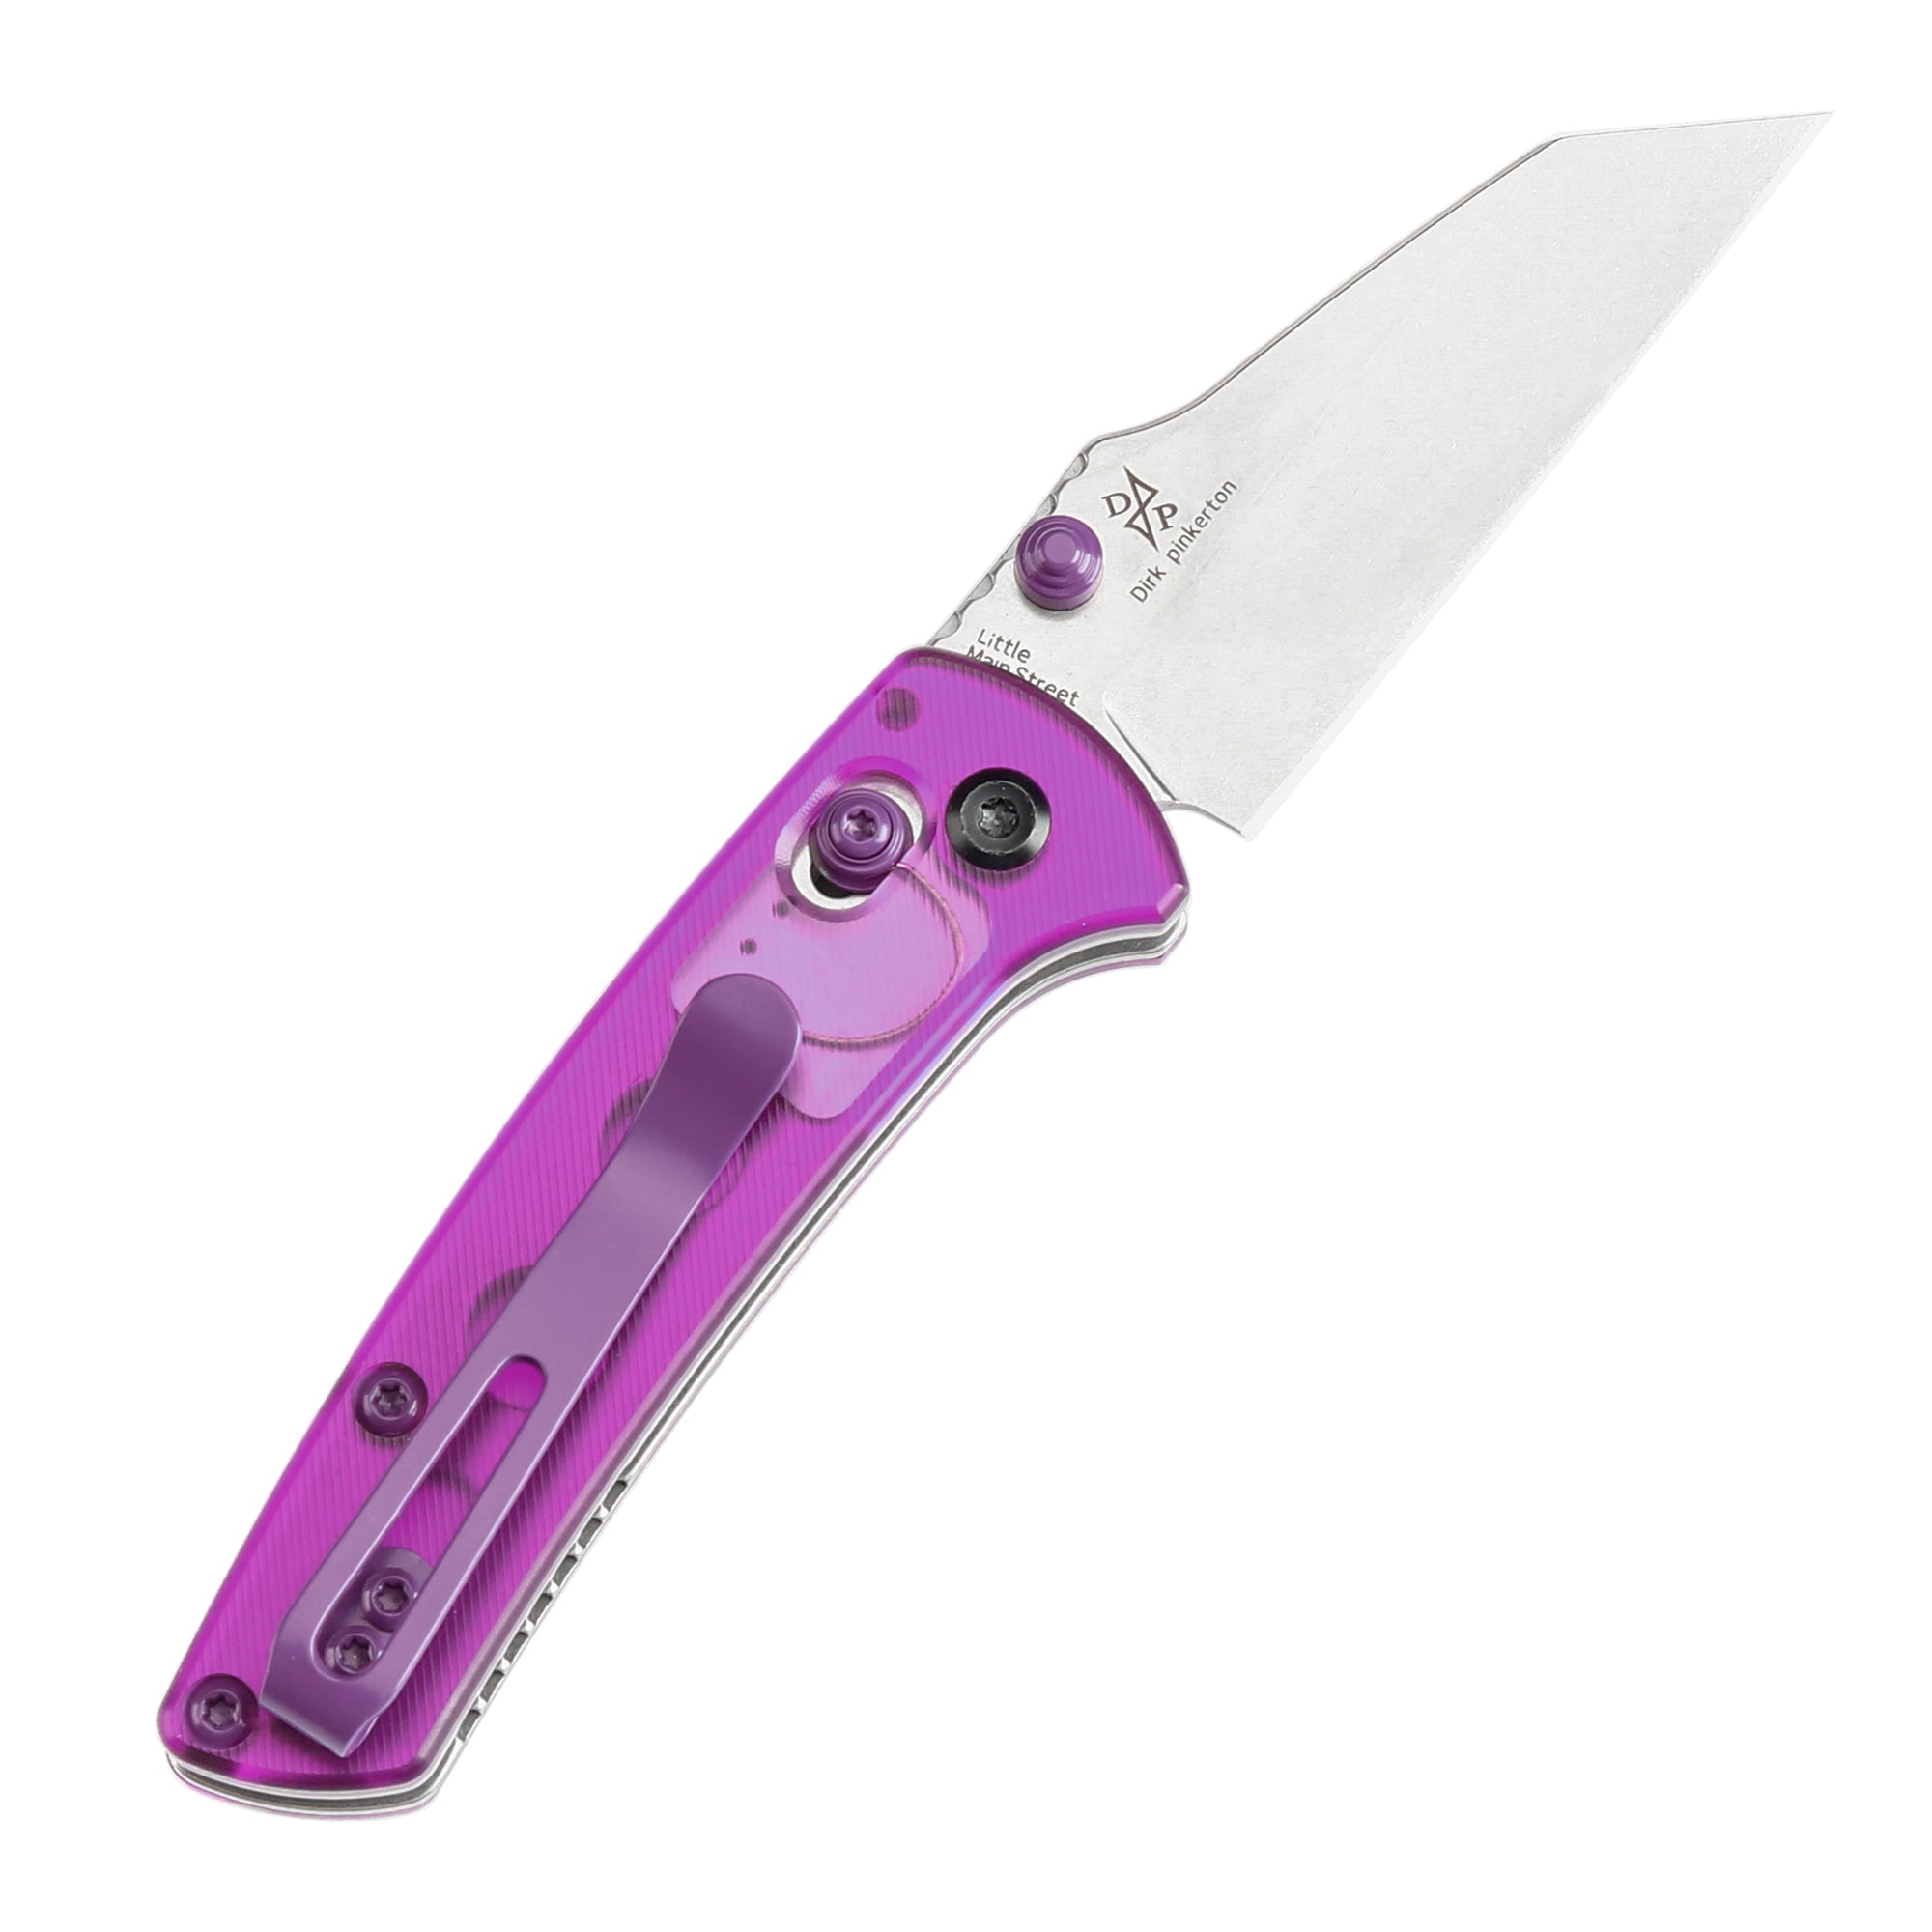 Kansept Little Main Street Flipper Knife T2015V2 154CM Blade Purple Acrylic G10 Handle